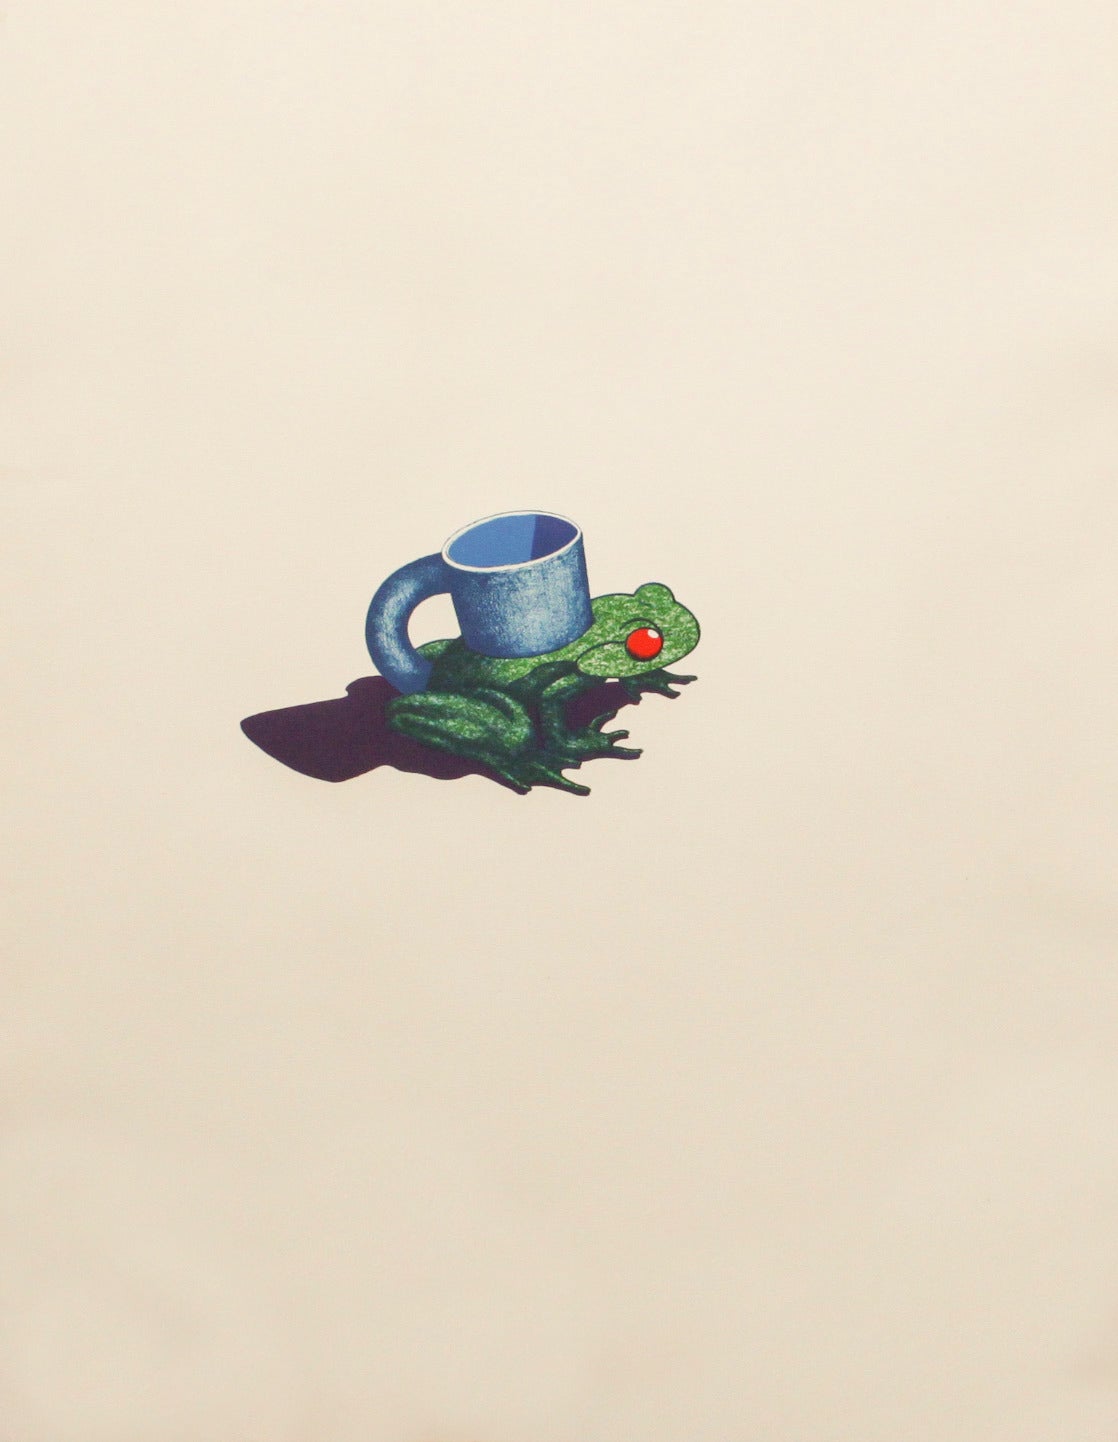 Ken Price Animal Print - Frog Cup